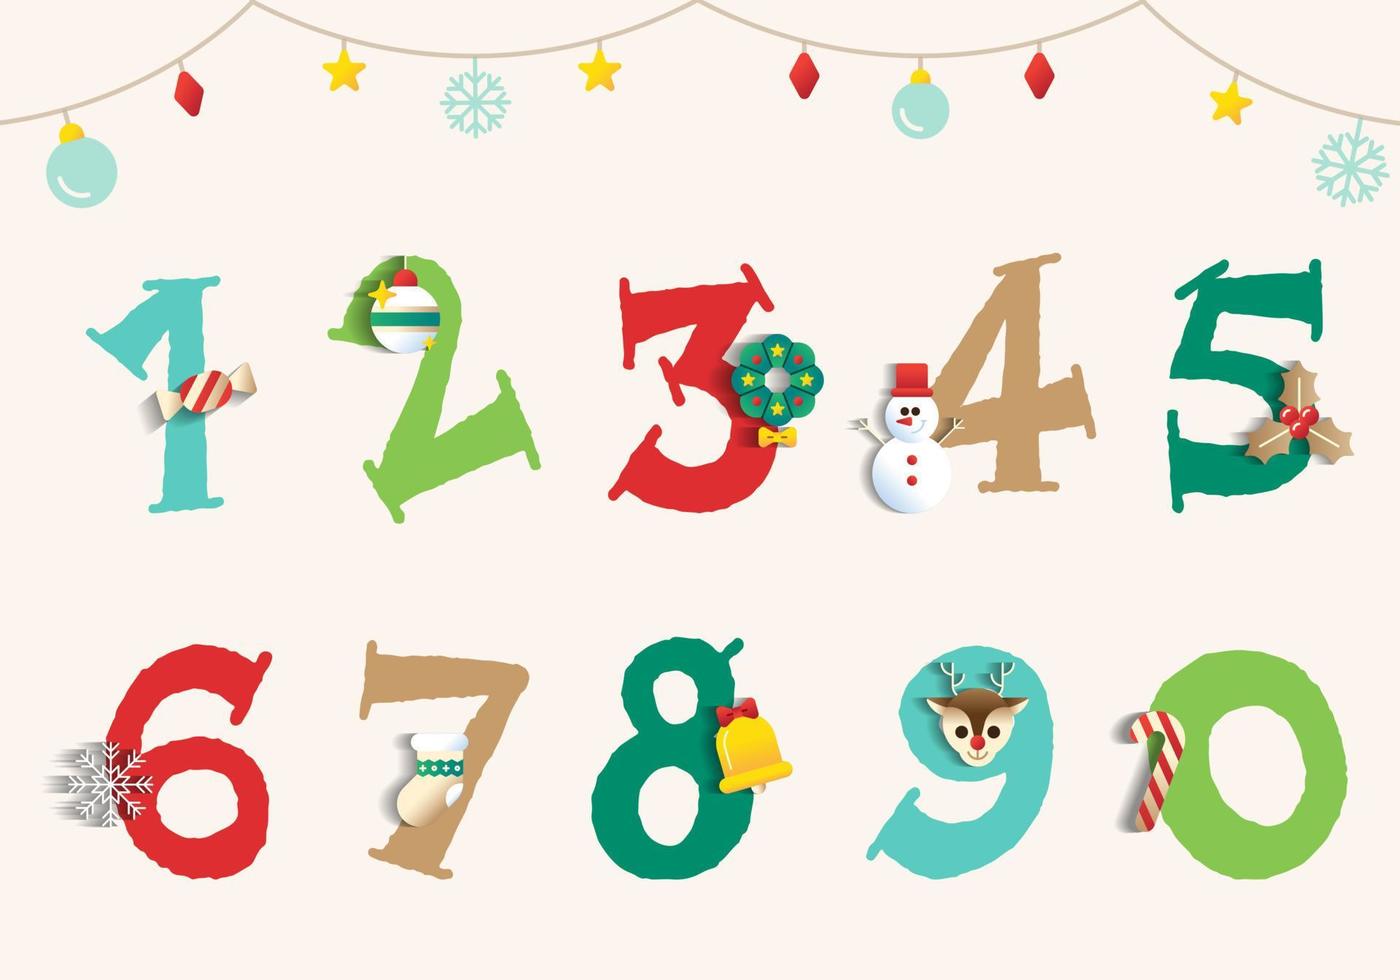 söt glad jul Semester fest siffra numerisk siffra font design hand dra tecknad serie jul firande element snögubbe jul träd barn barn isolerat vektor illustration för dekoration